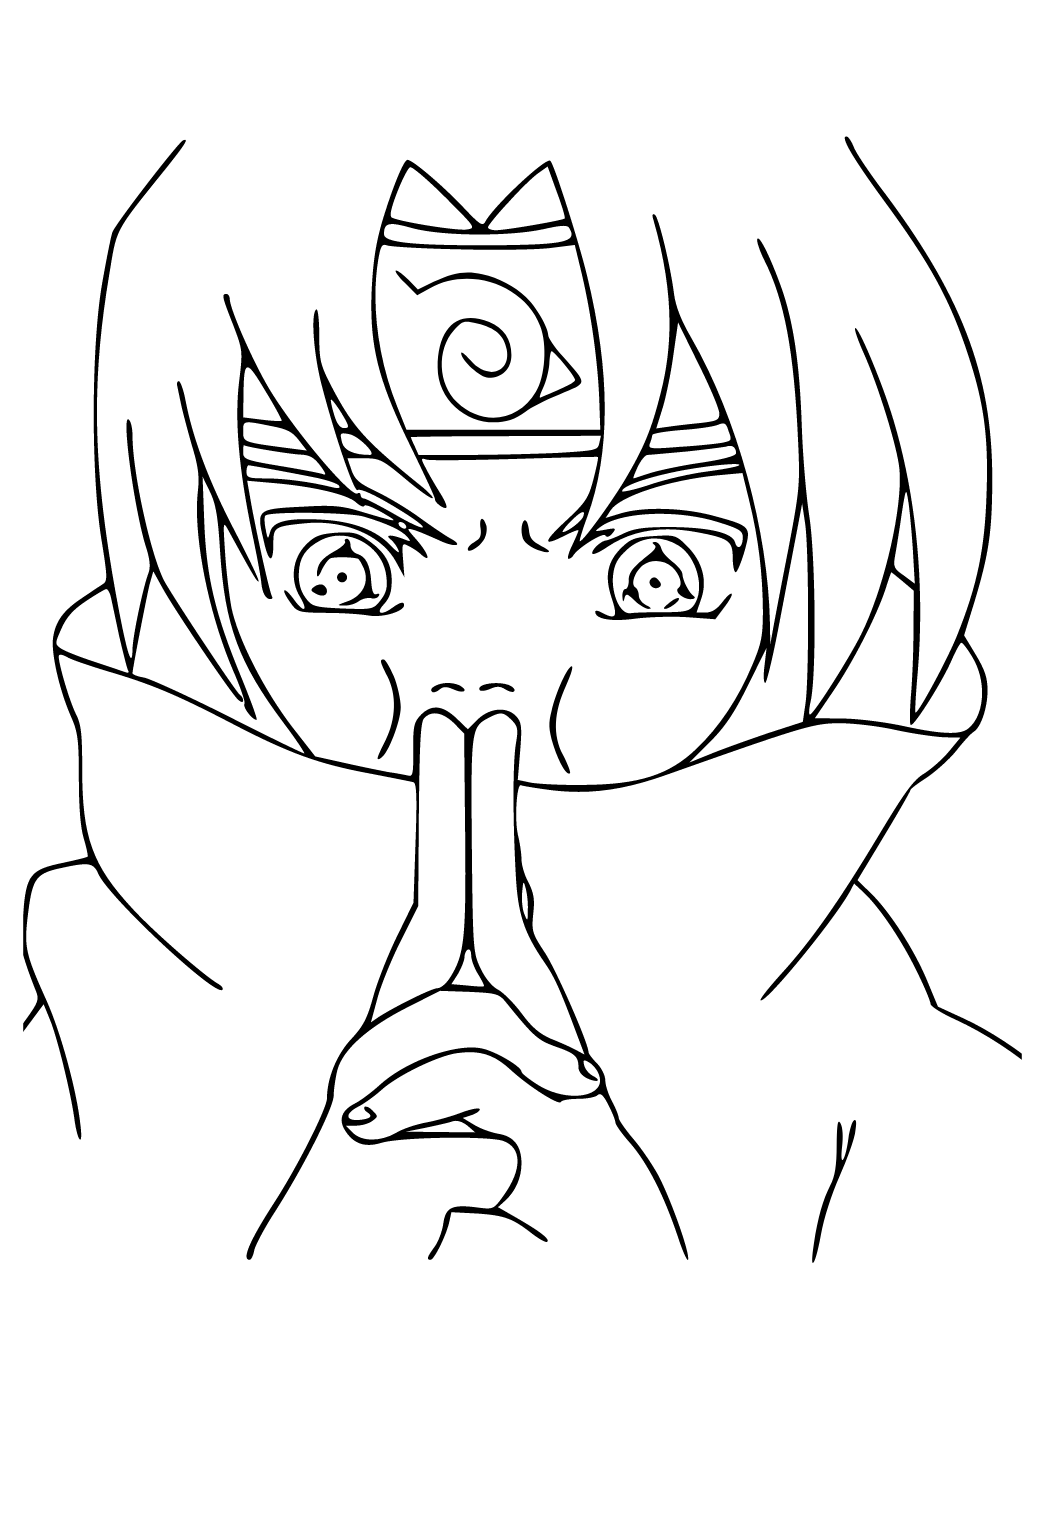 Sasuke Uchiha, a ninja from Naruto coloring page printable game